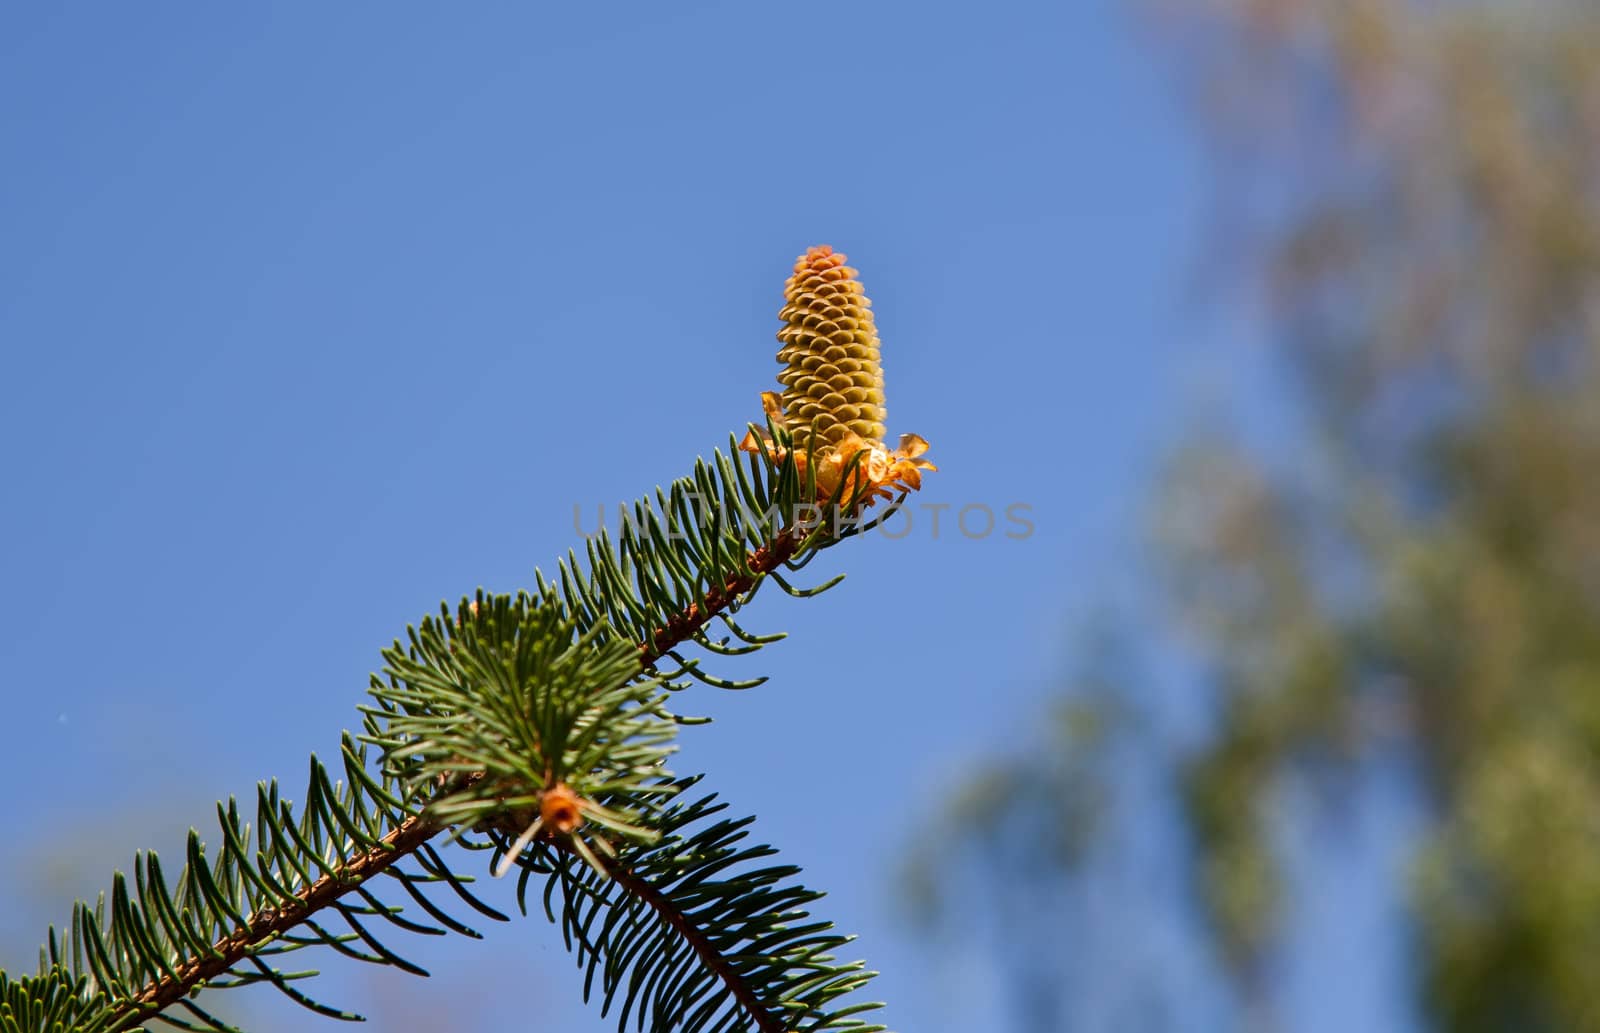 Fir cone on fir branch